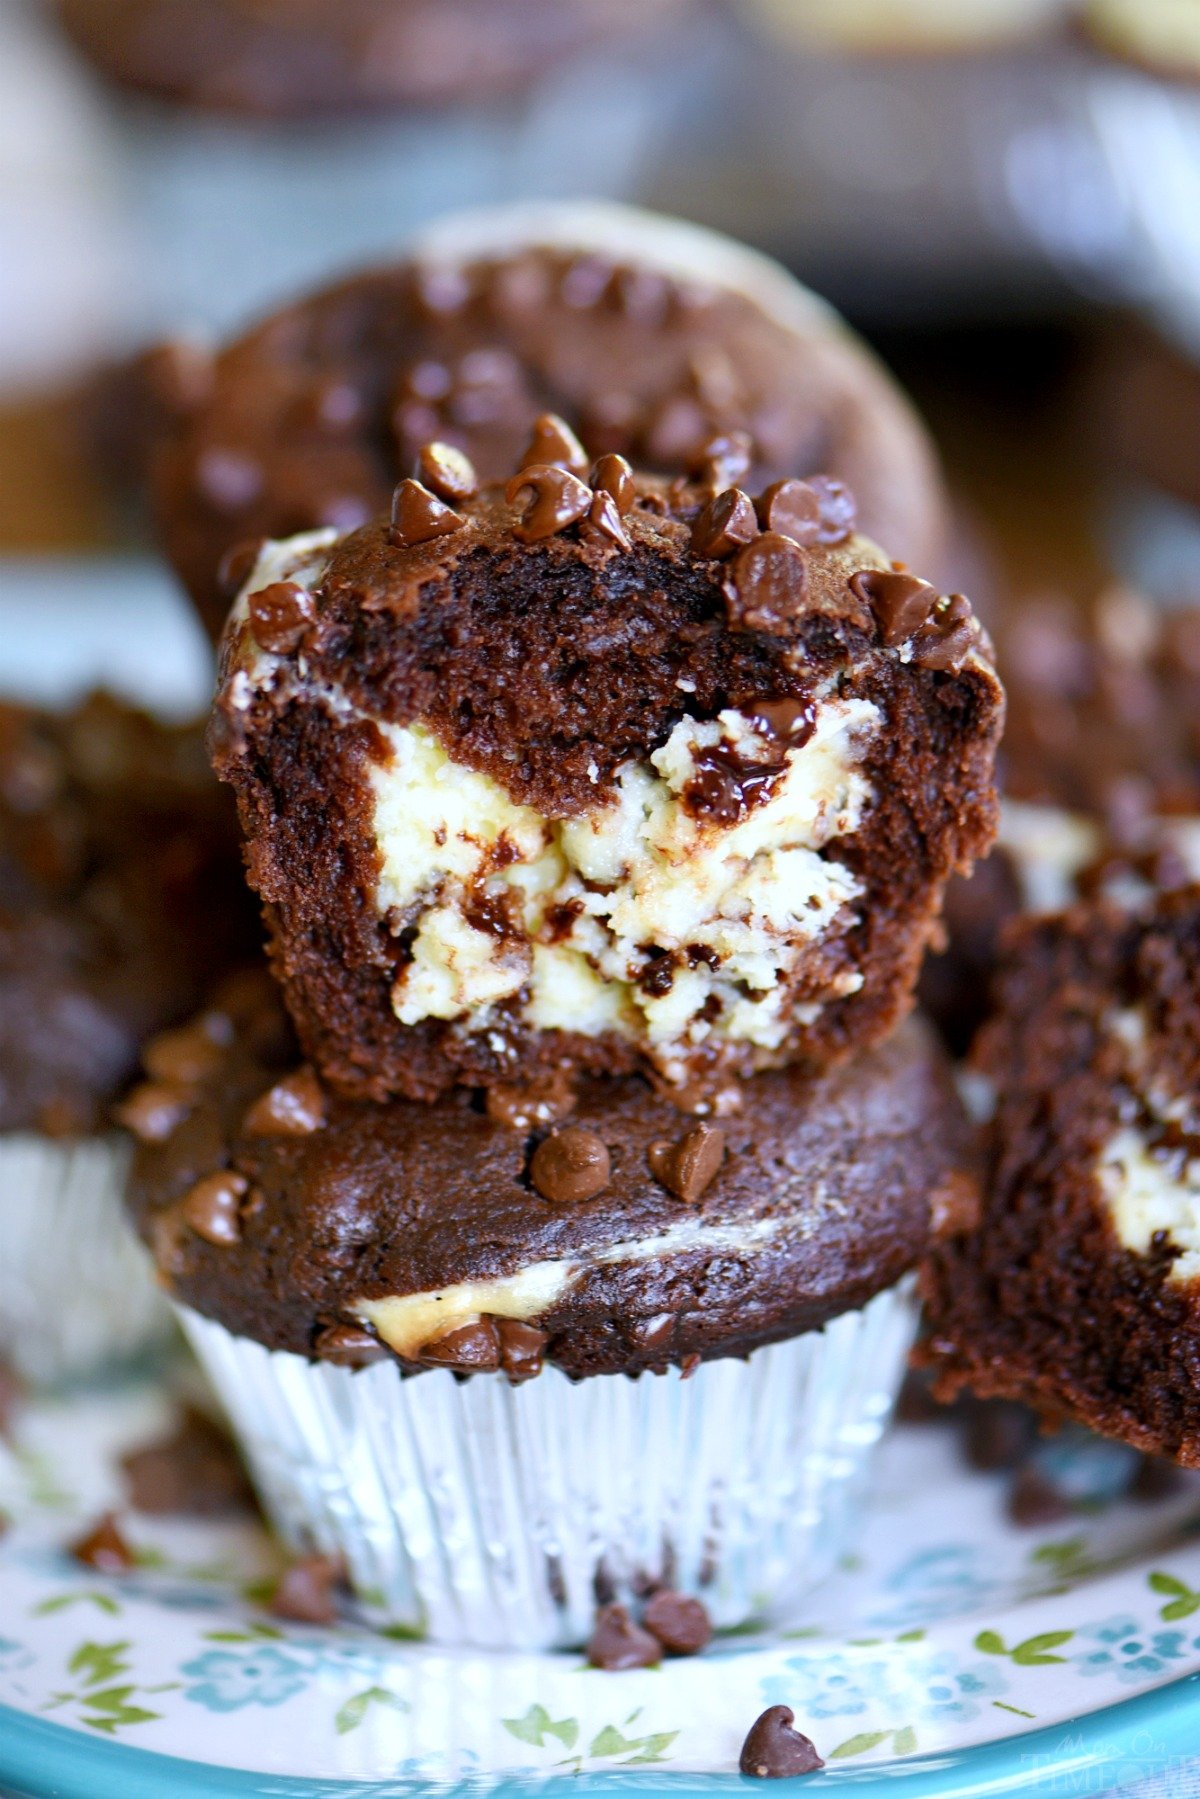 chocolate-muffins-recipe